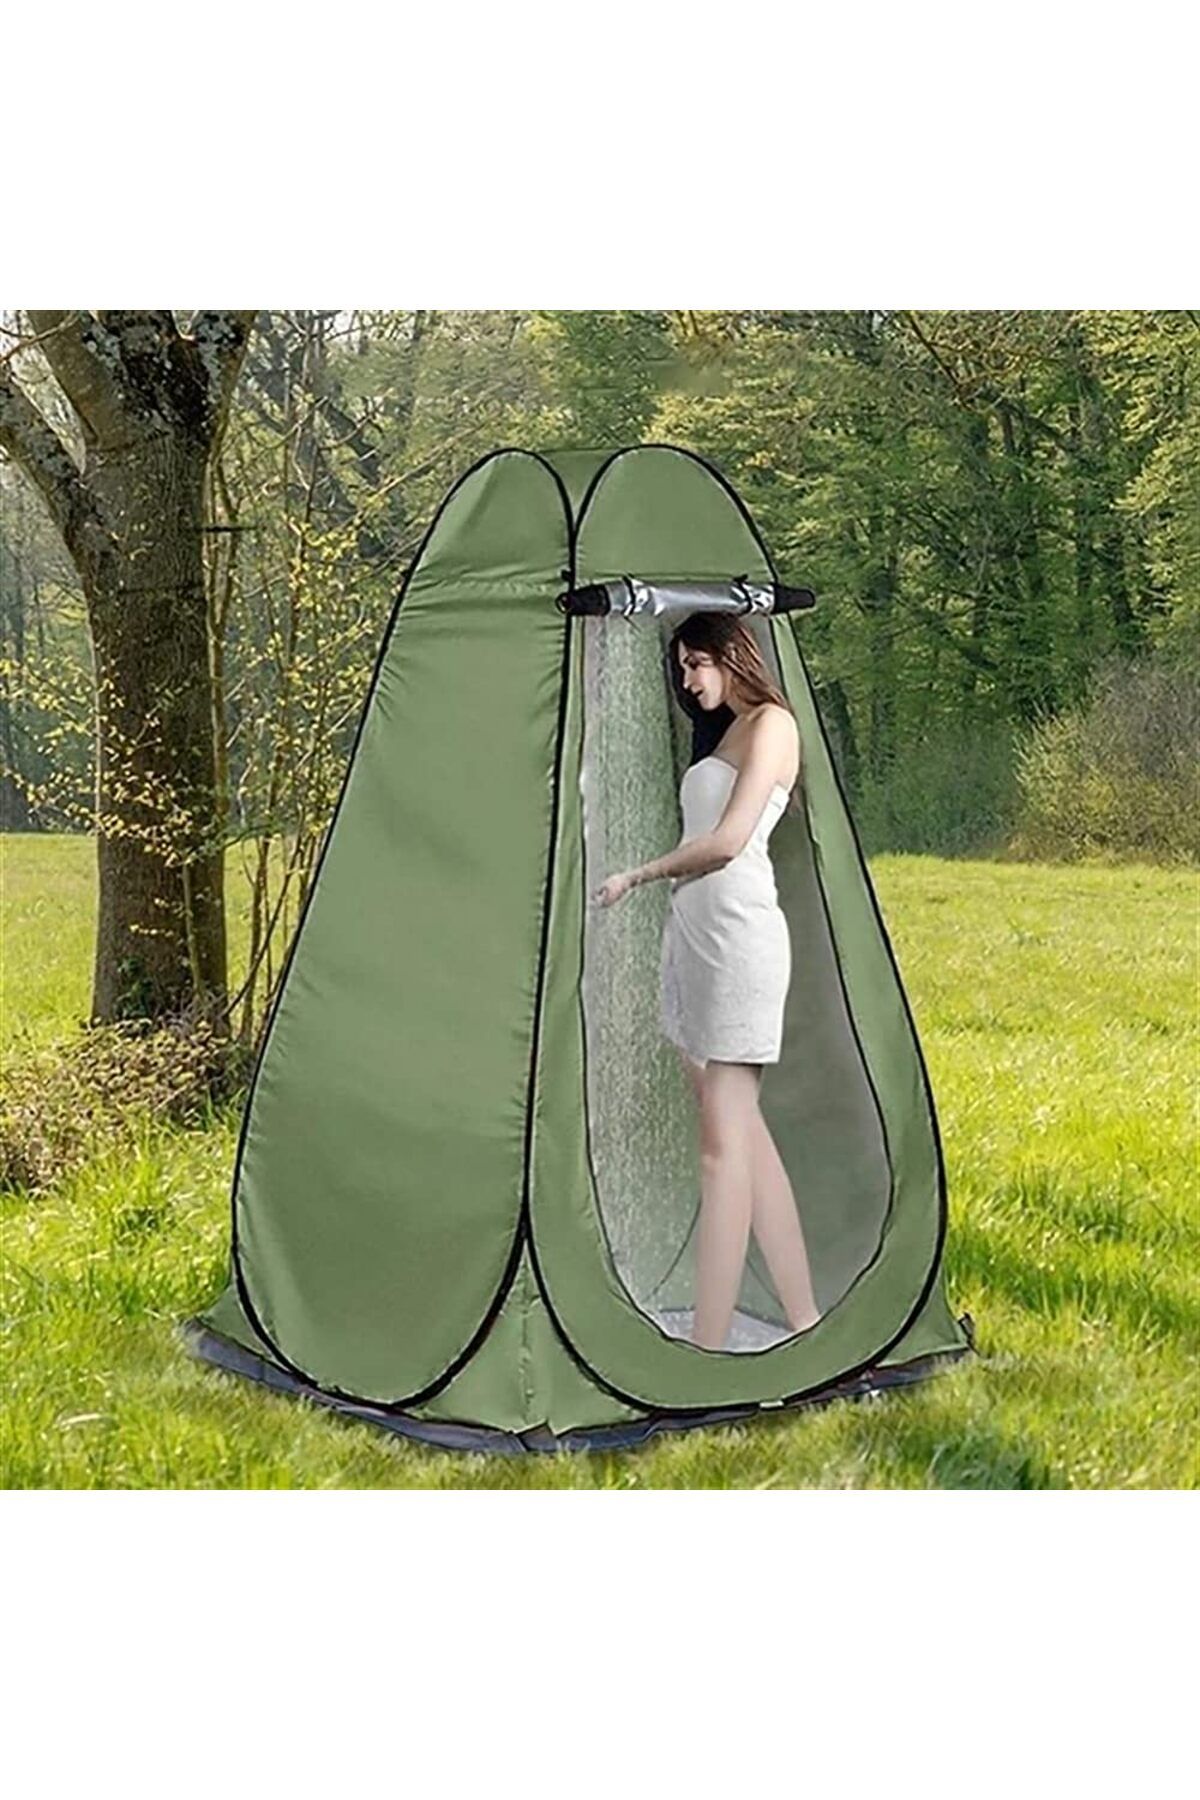 MirtaButik Kamp Alanı Duş Giyinme Wc Çadırı Fotoğrafcı Prova Kabini 190x120x120